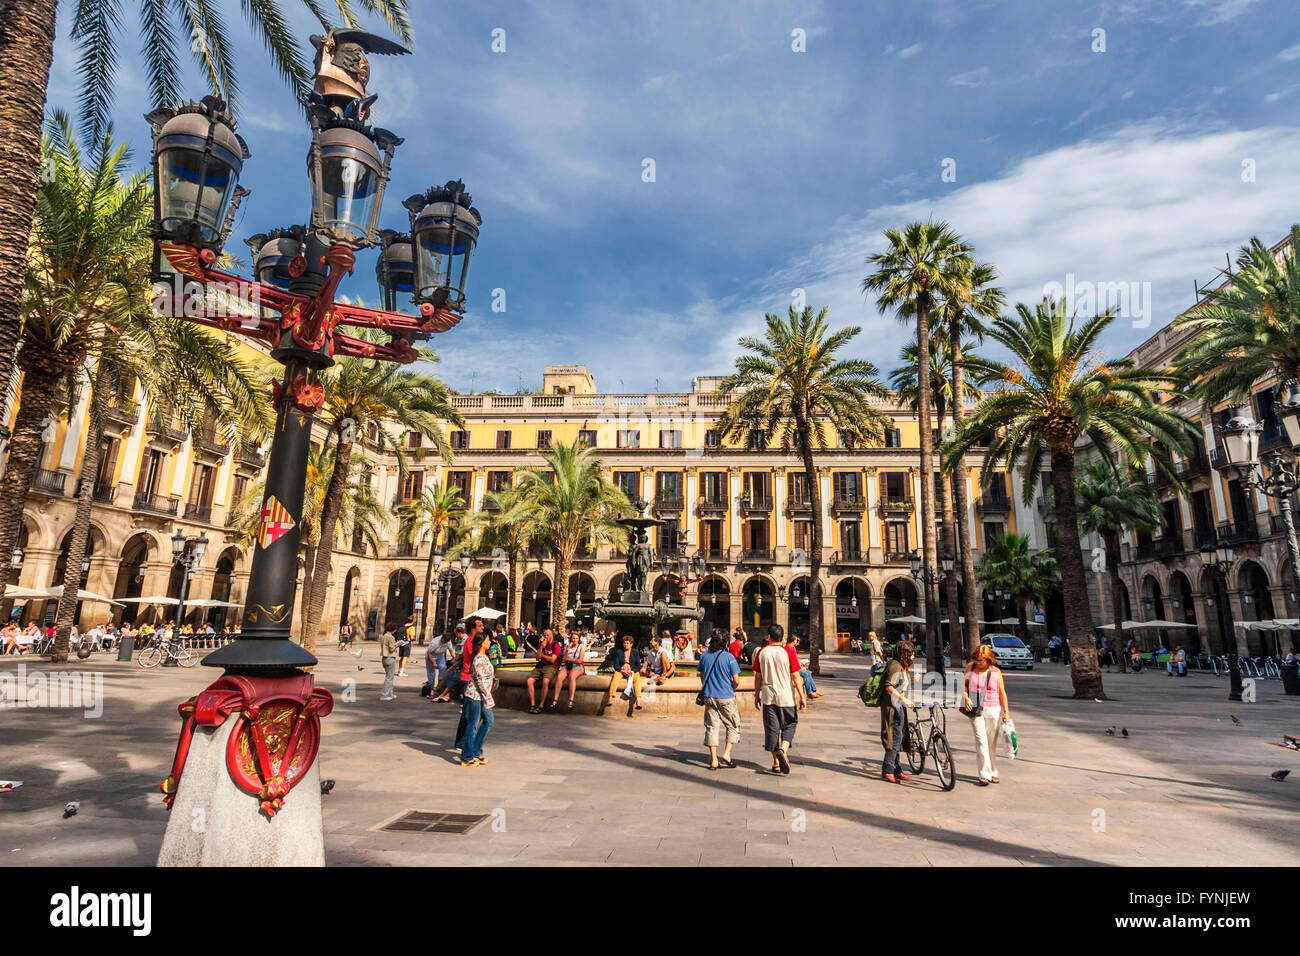 Plaça Reial, Piaza Real, Plaza Reial, Royal Plaza, Laterne par Gaudi, Barri Gotic, Barcelone, Catalogne, Espagne Banque D'Images